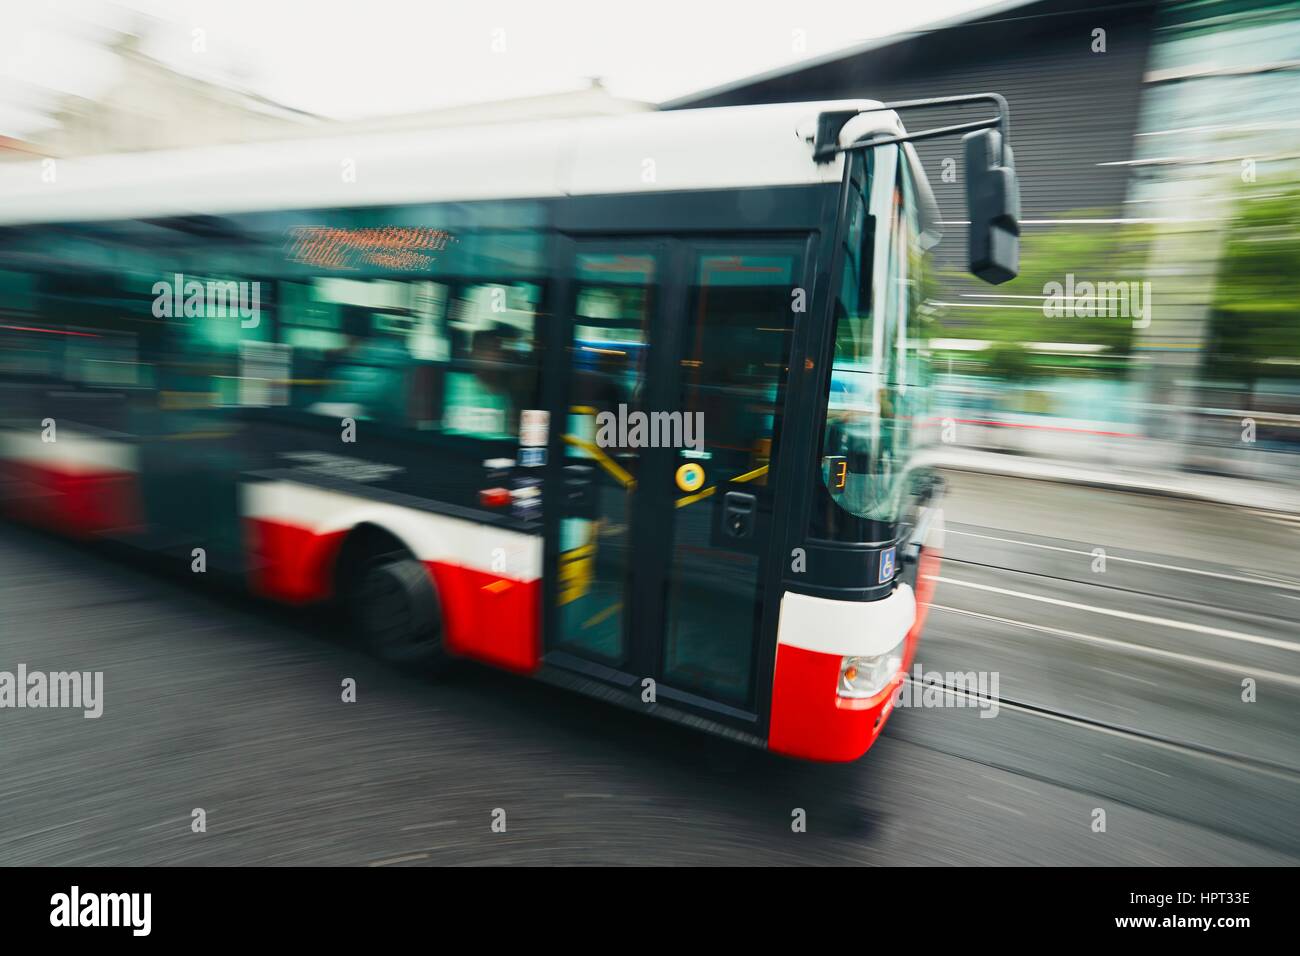 Alltag in der Stadt. Bus des öffentlichen Verkehrs auf der Straße - Bewegungsunschärfe Stockfoto